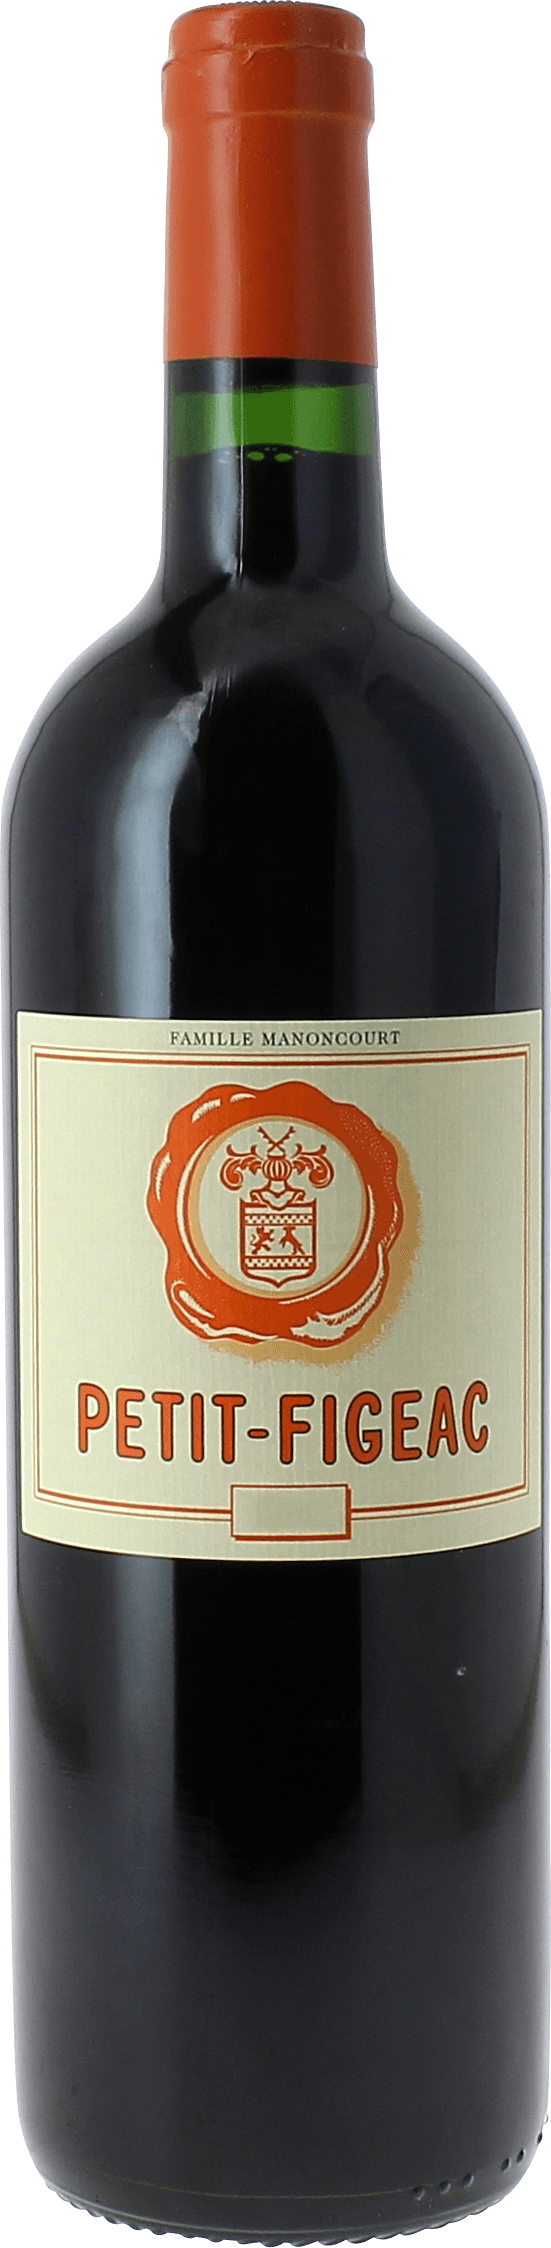 Petit figeac 2nd vin de chteau figeac 2014  Saint-Emilion, Bordeaux rouge